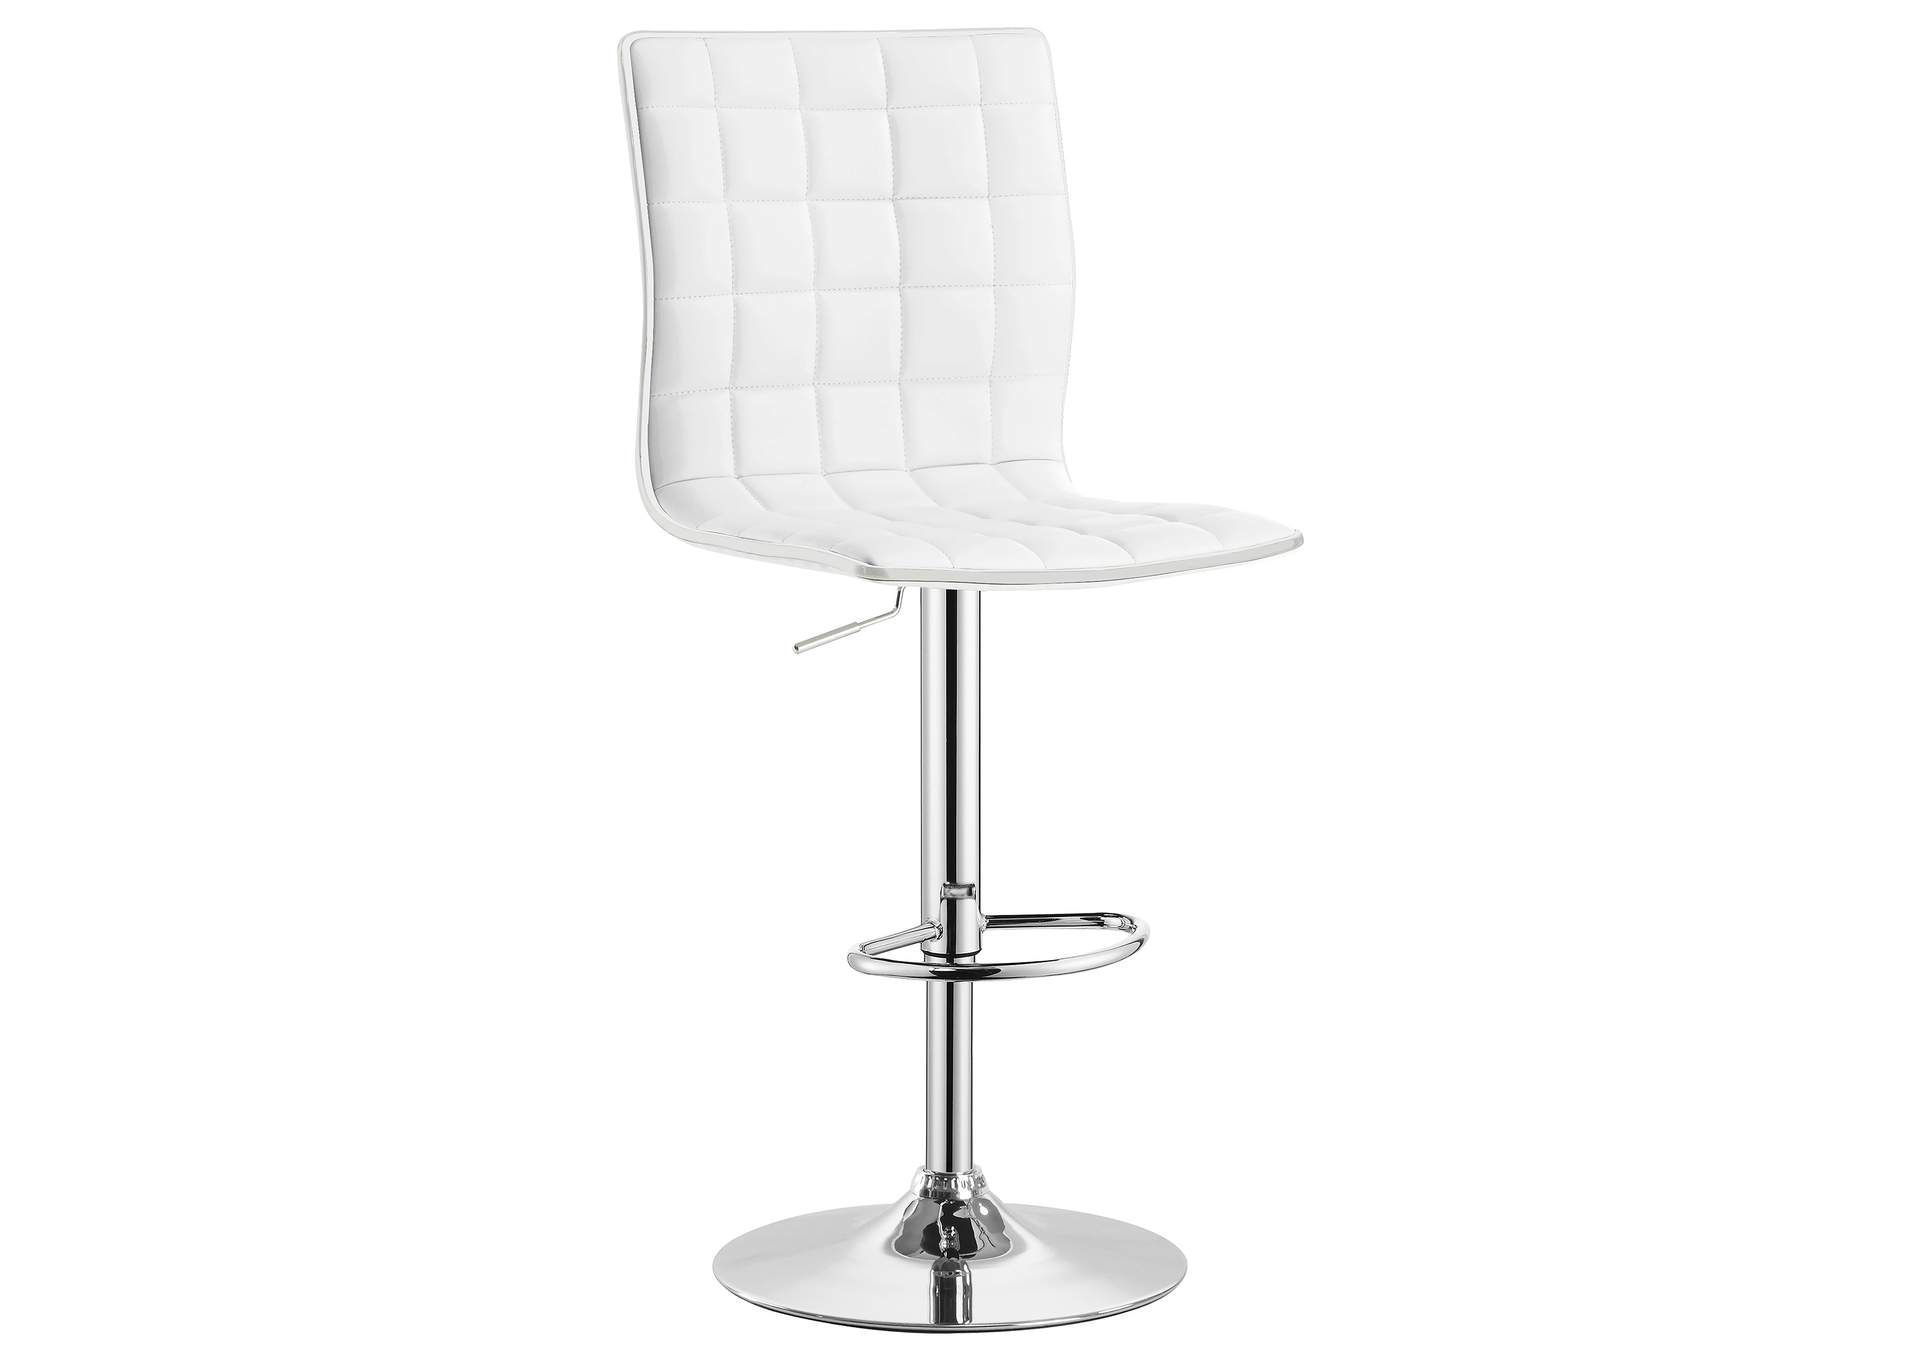 Ashbury Upholstered Adjustable Bar Stools White and Chrome (Set of 2),Coaster Furniture